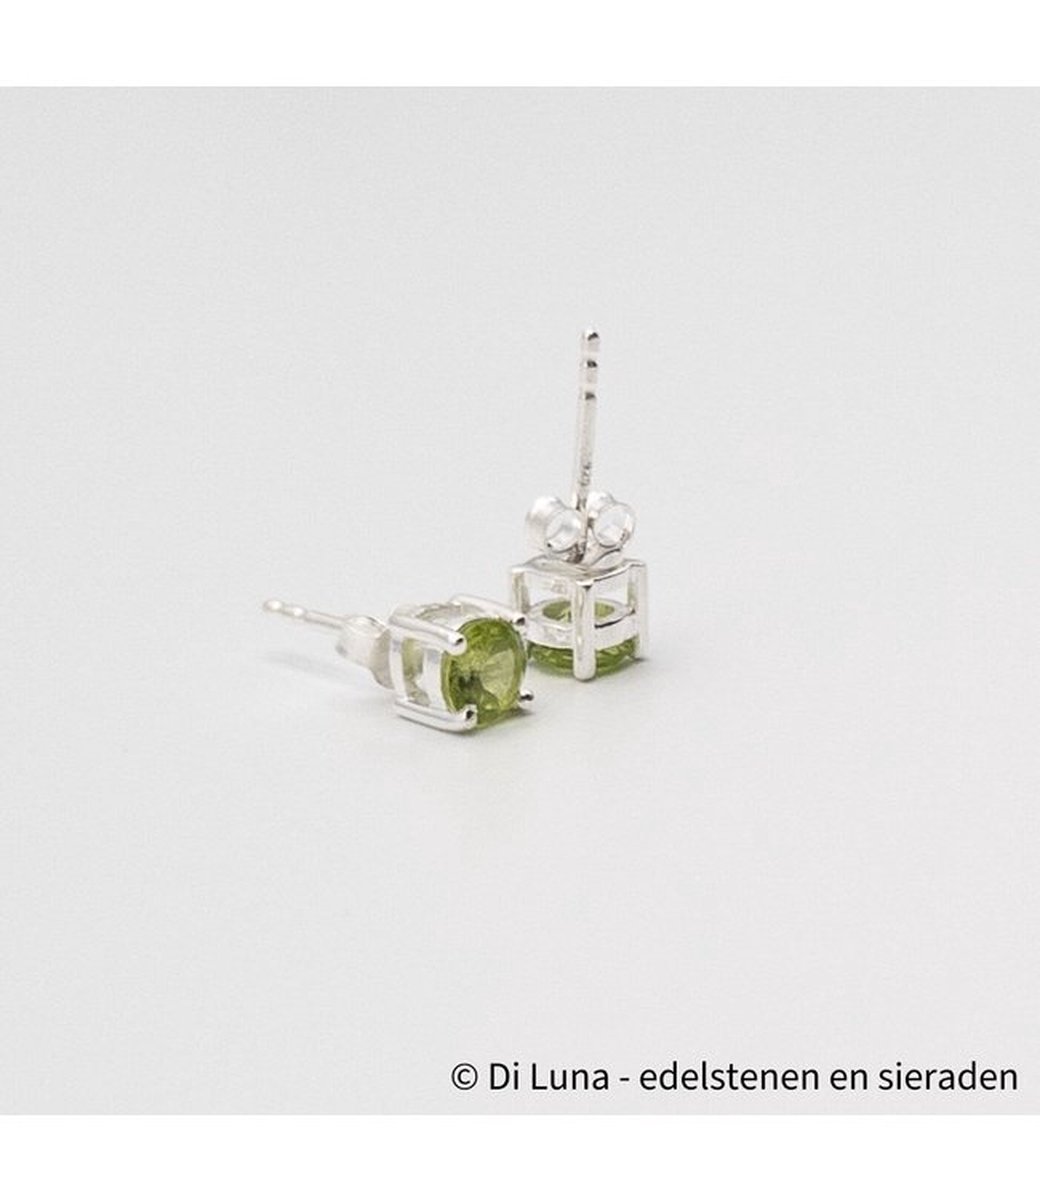 diluna.nl - Peridoot - 925 sterling zilveren edelsteen oorbellen